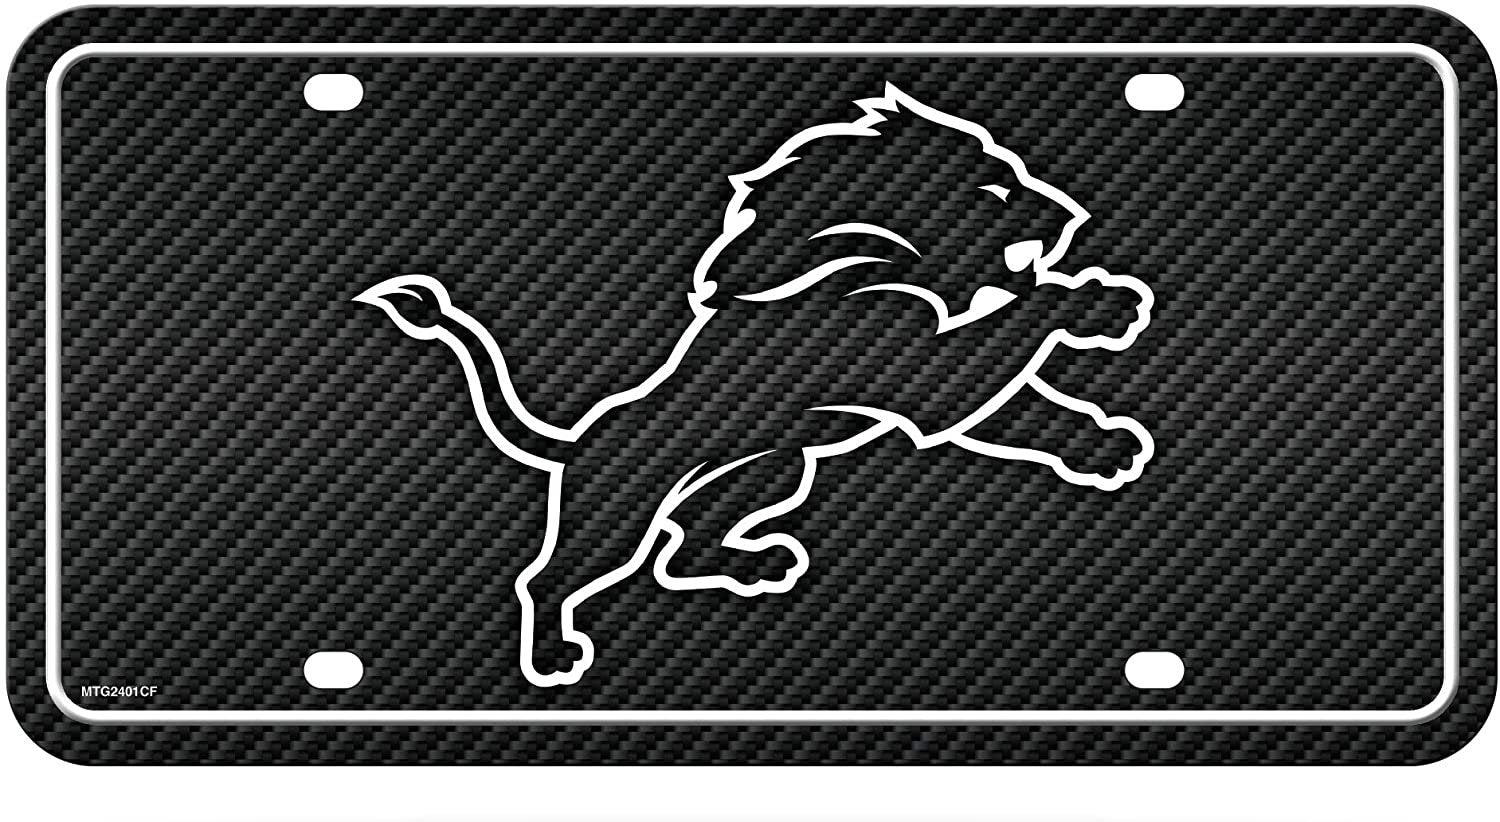 Detroit Lions Metal Auto Tag License Plate, Carbon Fiber Design, 6x12 Inch